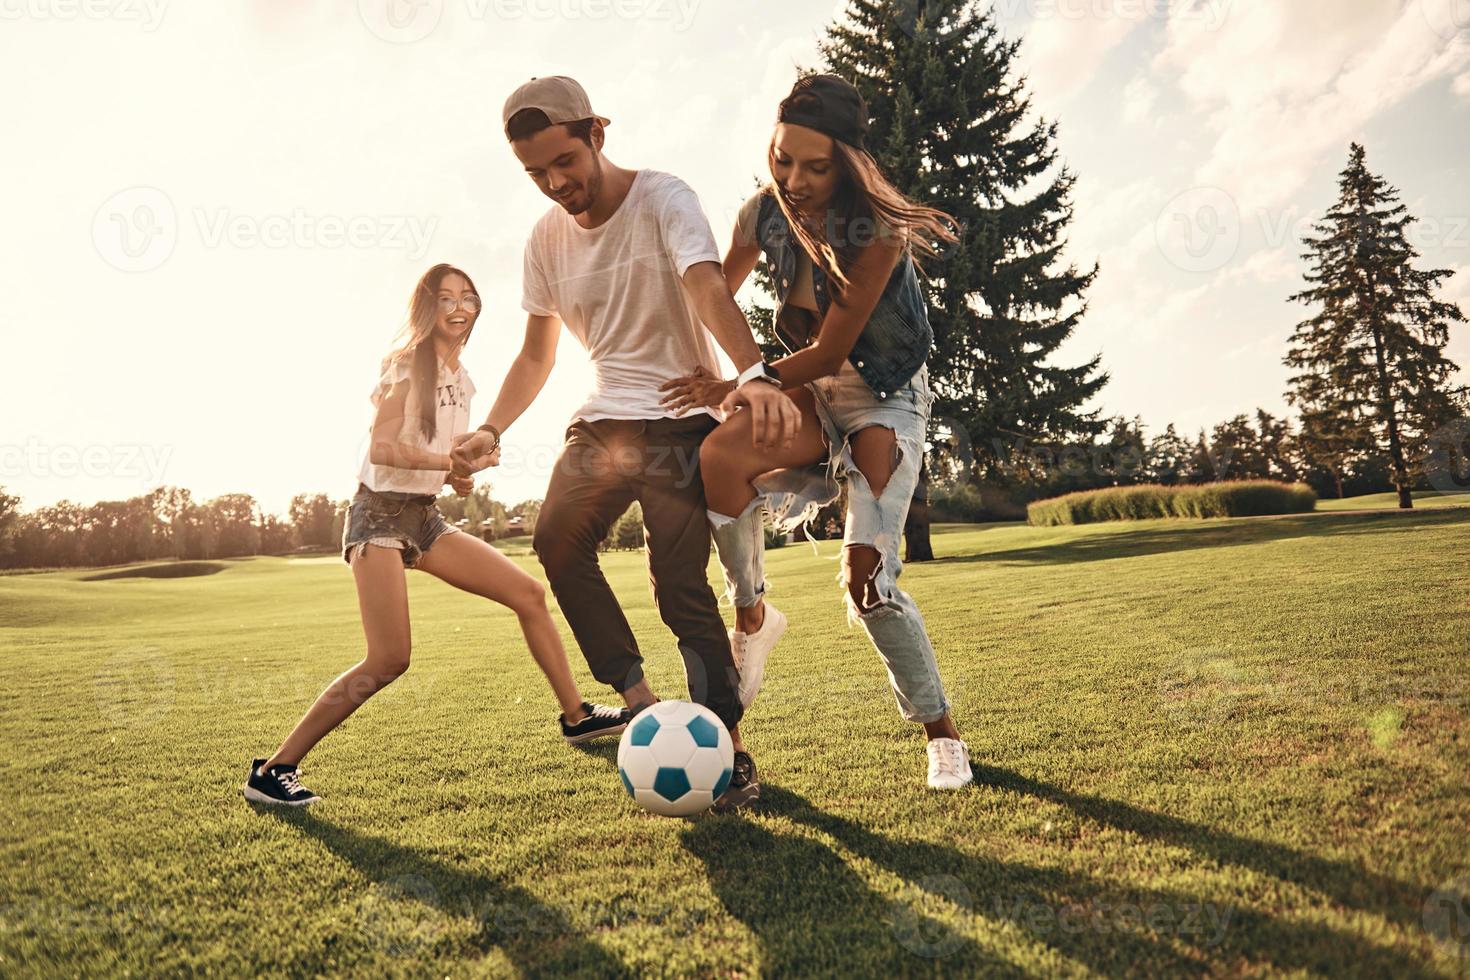 sentindo-se livre com os amigos. comprimento total de jovens sorridentes em roupas casuais correndo enquanto jogava futebol ao ar livre foto